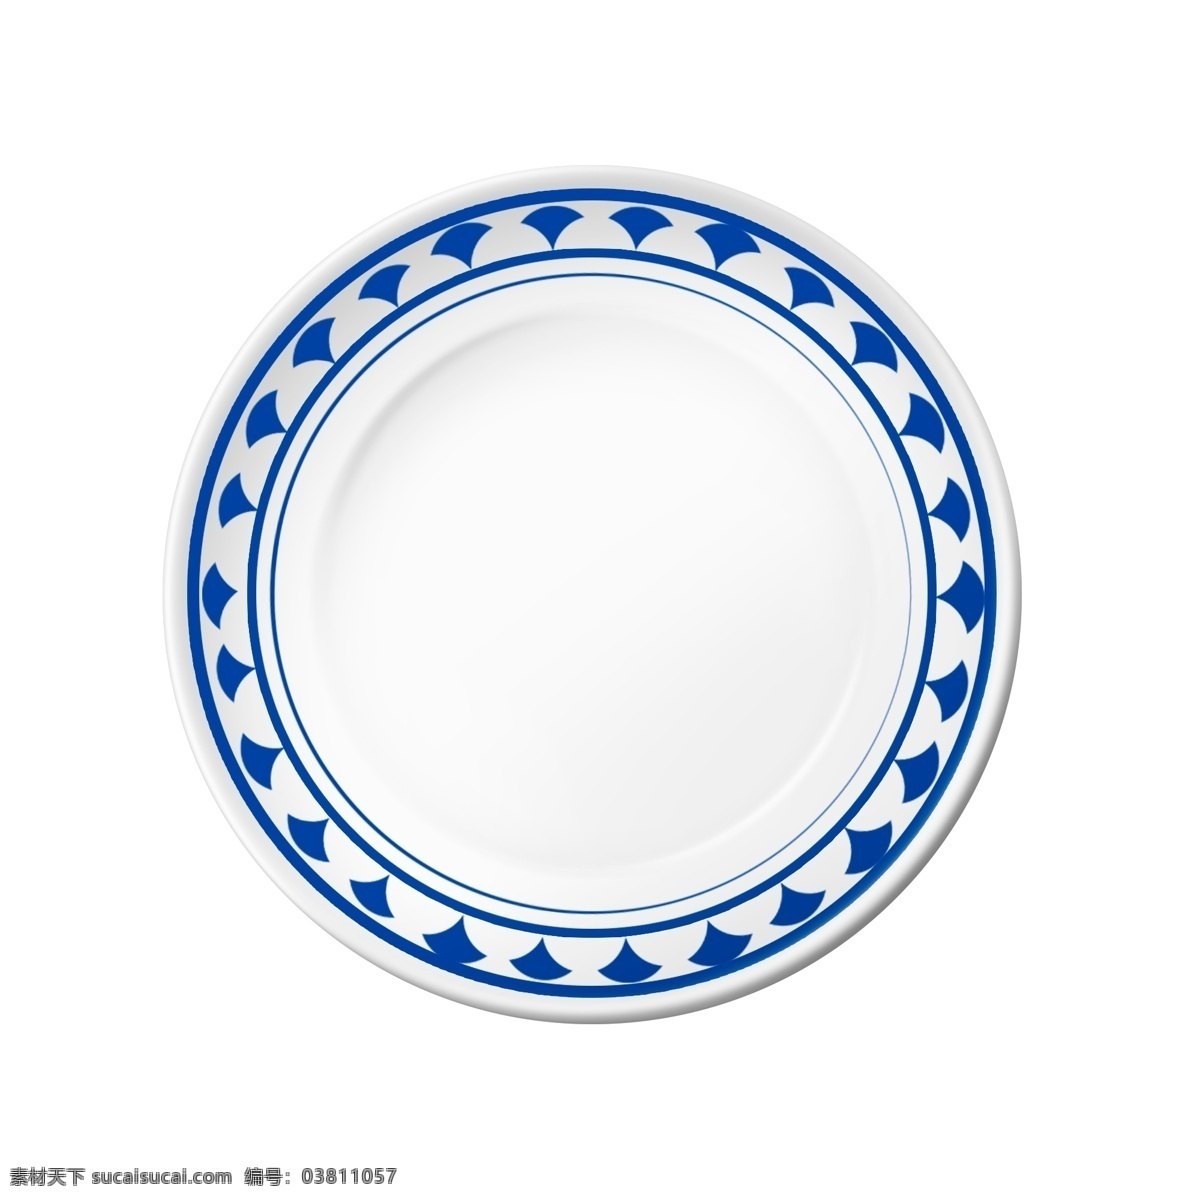 盘子 实物 白色 瓷盘 圆盘 装饰 青花瓷 系列 盘子实物 白色瓷盘 青花瓷系列 餐盘 蓝色 风格 摆盘 家居用品